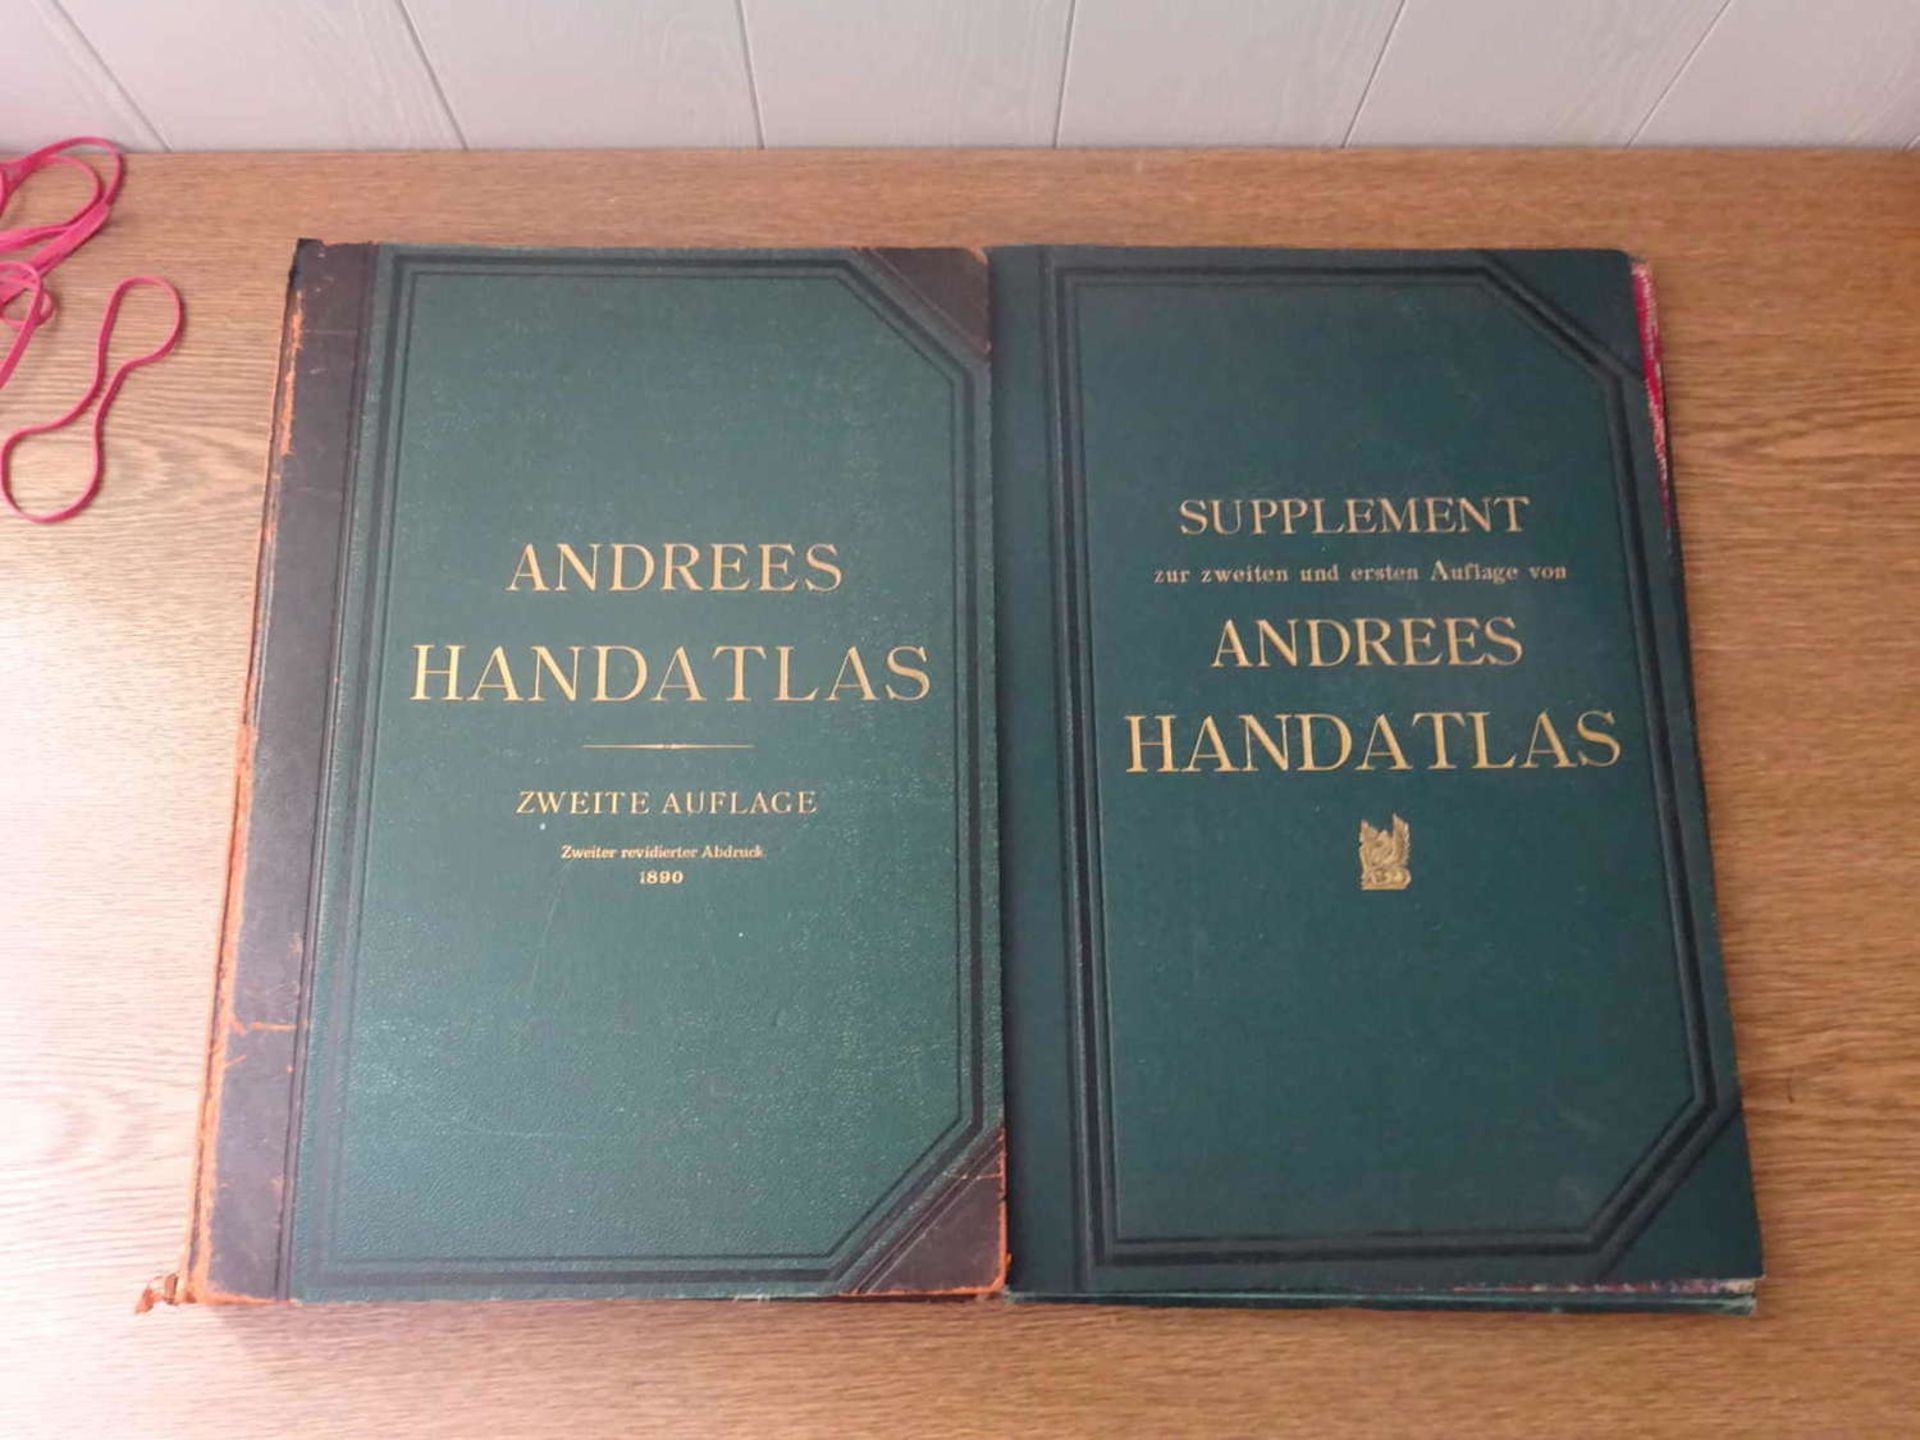 Andrees Handatlas, Zweite Auflage, Zweiter revidierter Abdruck 1890, sowie Supplement zur zweiten